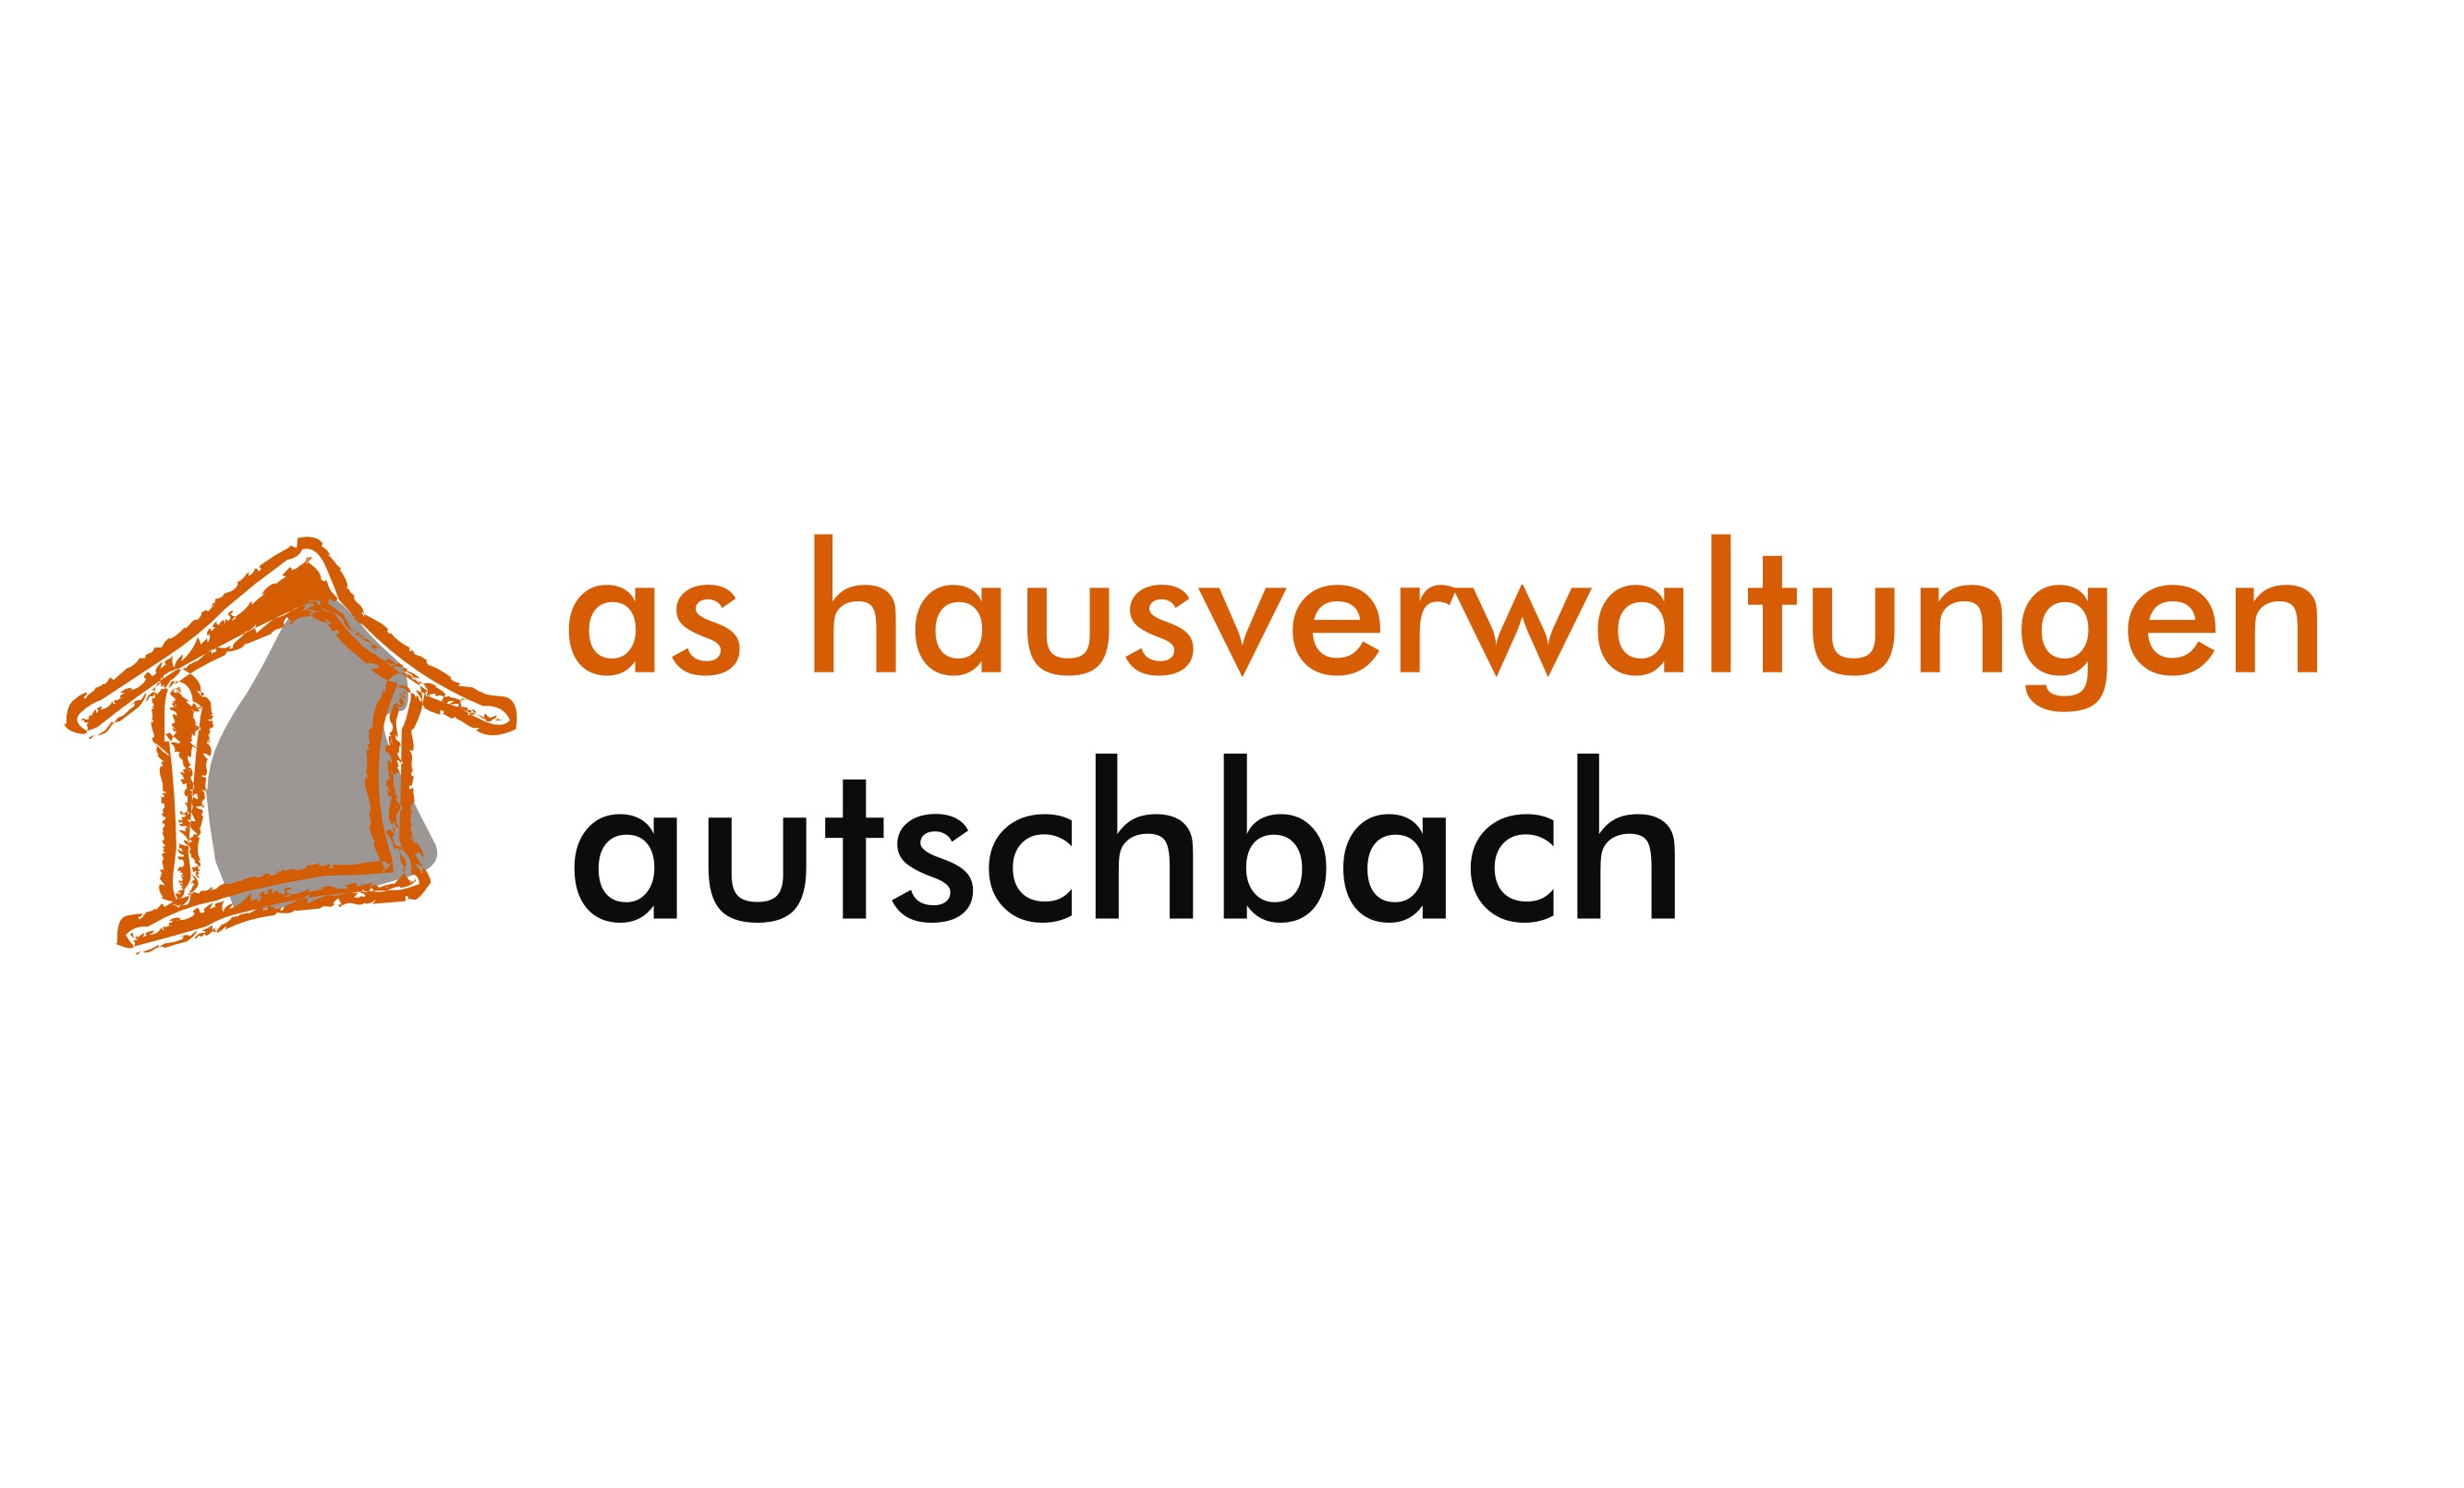 Preiswert, effizient, innovativ: HausverwalterSuche.de für erfolgreiche Aquise